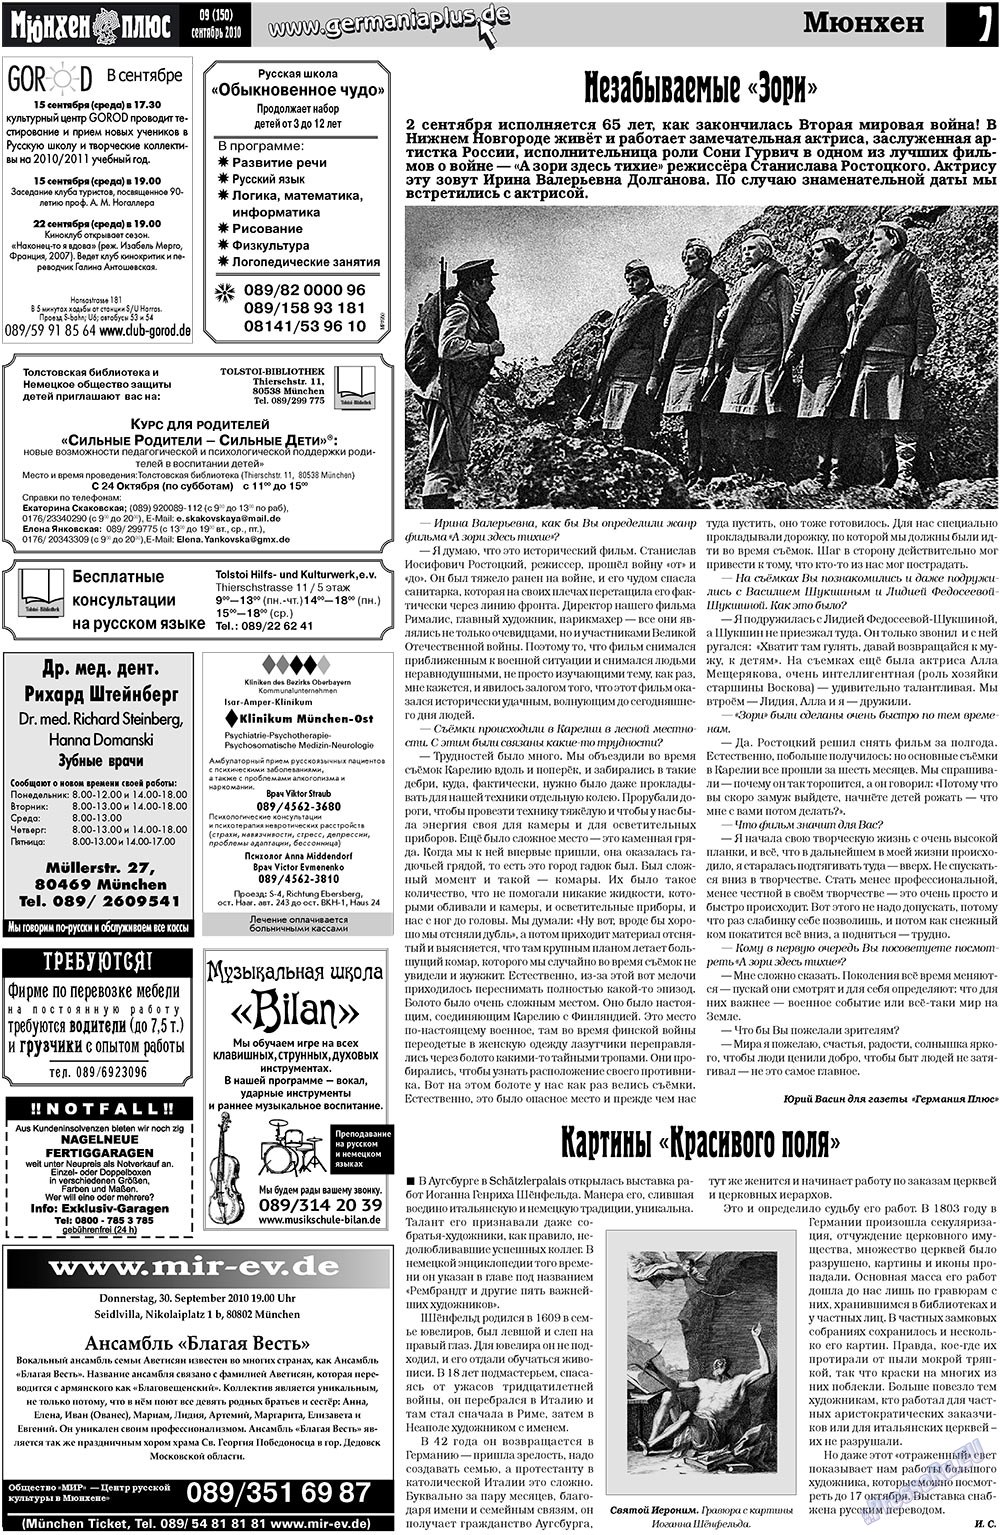 Германия плюс, газета. 2010 №9 стр.26